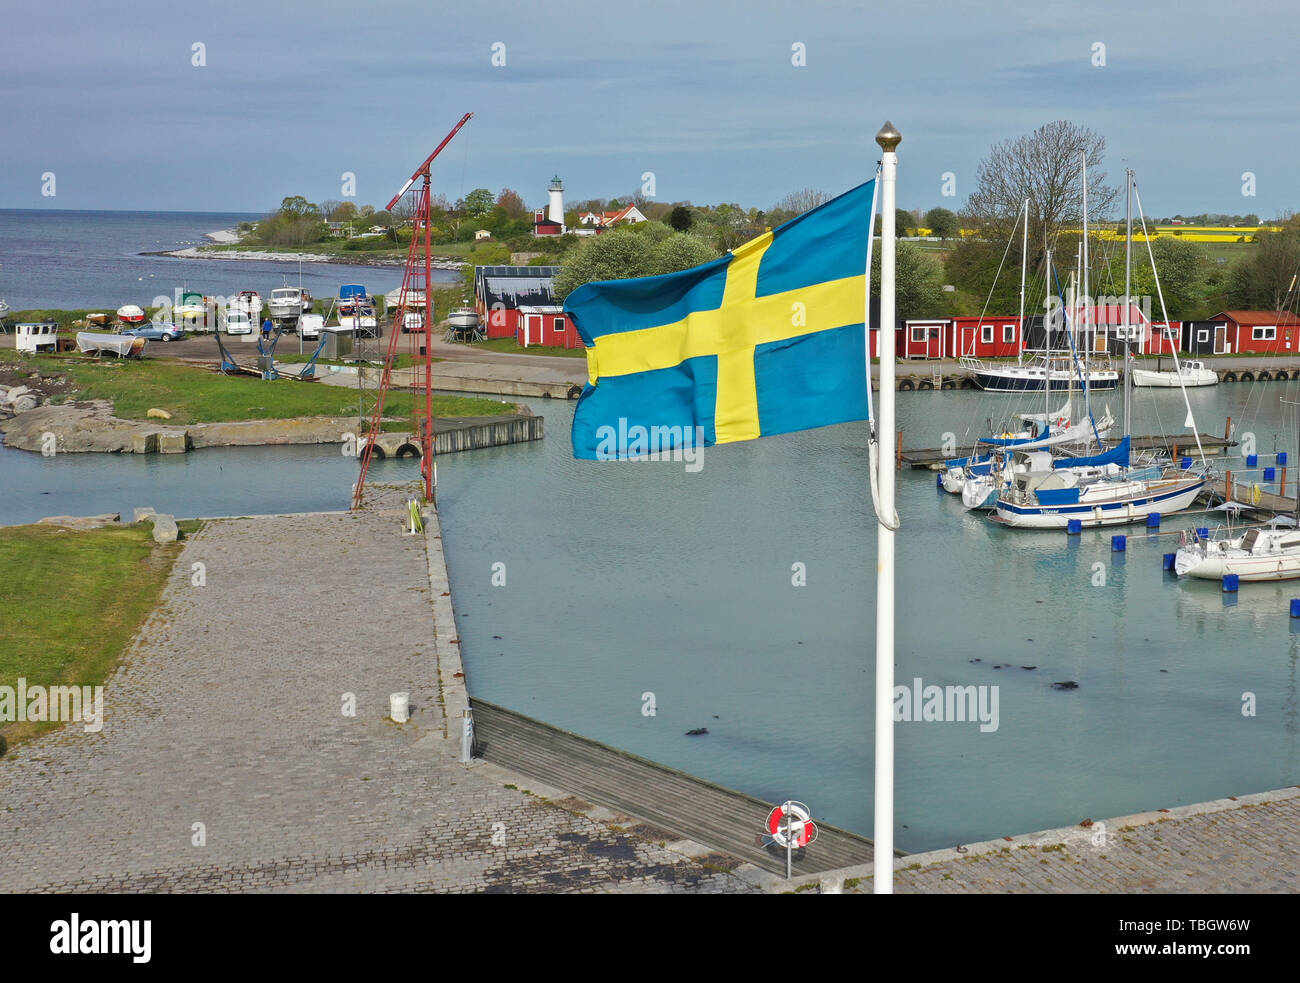 Avis de Smygehuk. Smygehuk pour la Suède, et la péninsule scandinave et la plus au sud de l'île est une destination touristique populaire avec plus de 200 000 visiteurs chaque été. Banque D'Images